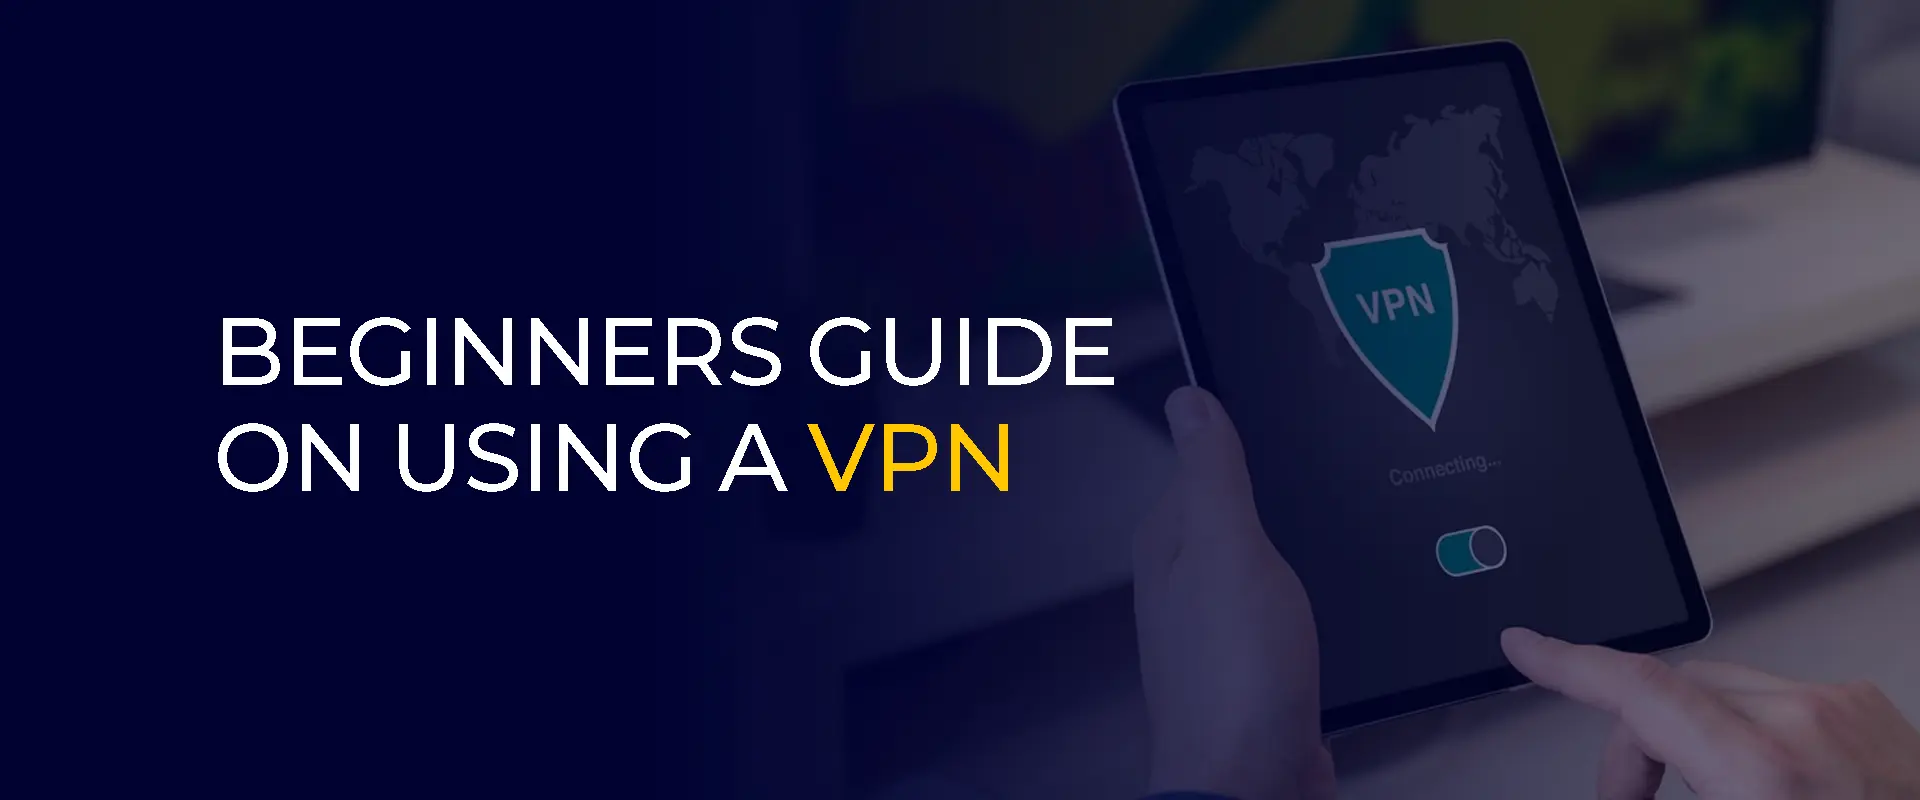 Guia para iniciantes sobre como usar uma VPN